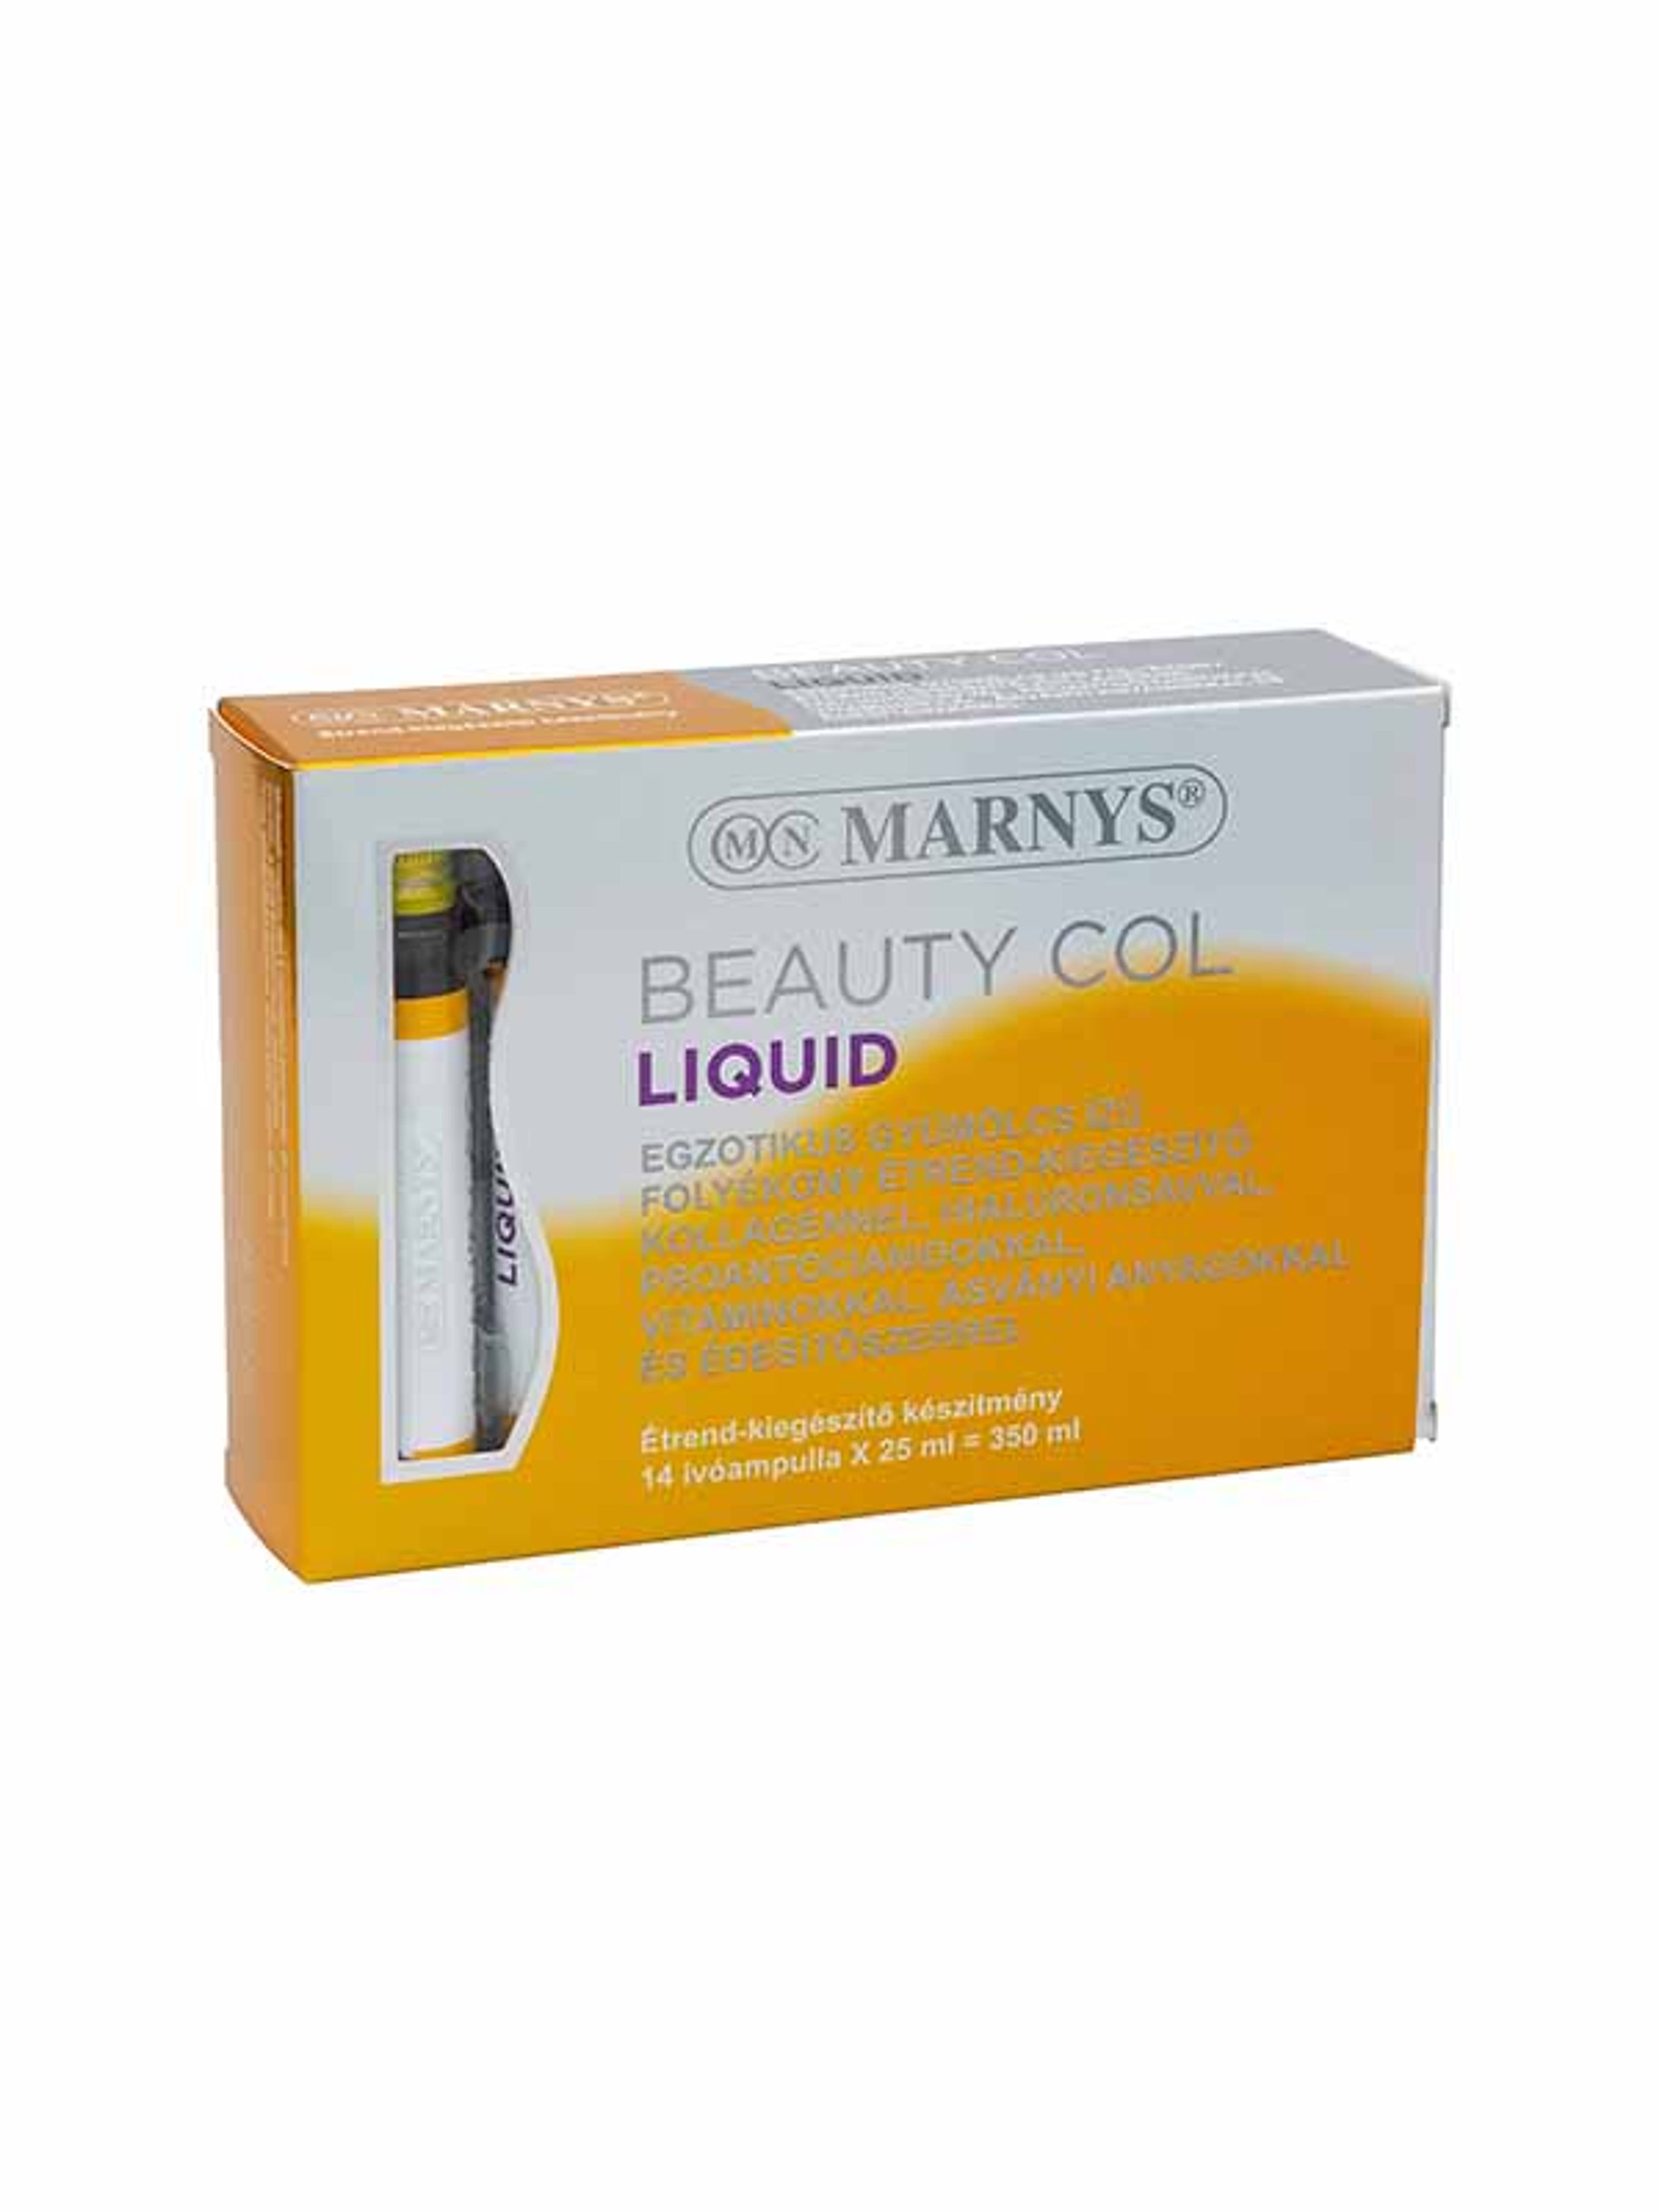 Marnys Beauty Col Liquid Folyékony szépségvitamin kollagénnel ivóampullában (14 x 25 ml) - 350 ml-1